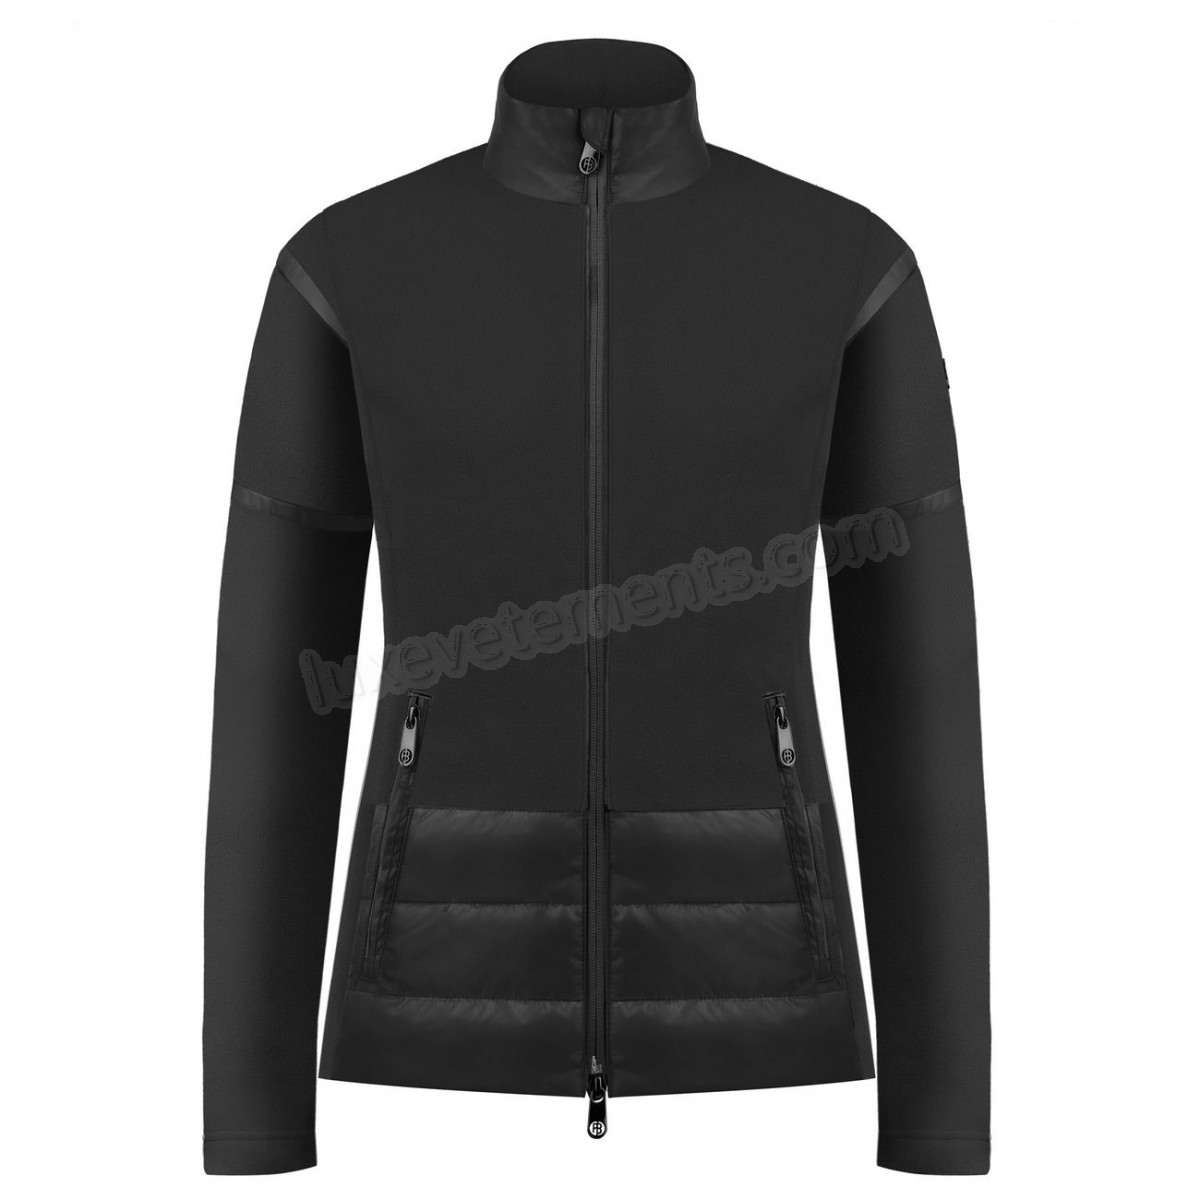 Poivre Blanc-Sports d'hiver femme POIVRE BLANC Veste Polaire Poivre Blanc Hybrid Fleece Jacket 1601 Black Femme Vente en ligne - -3